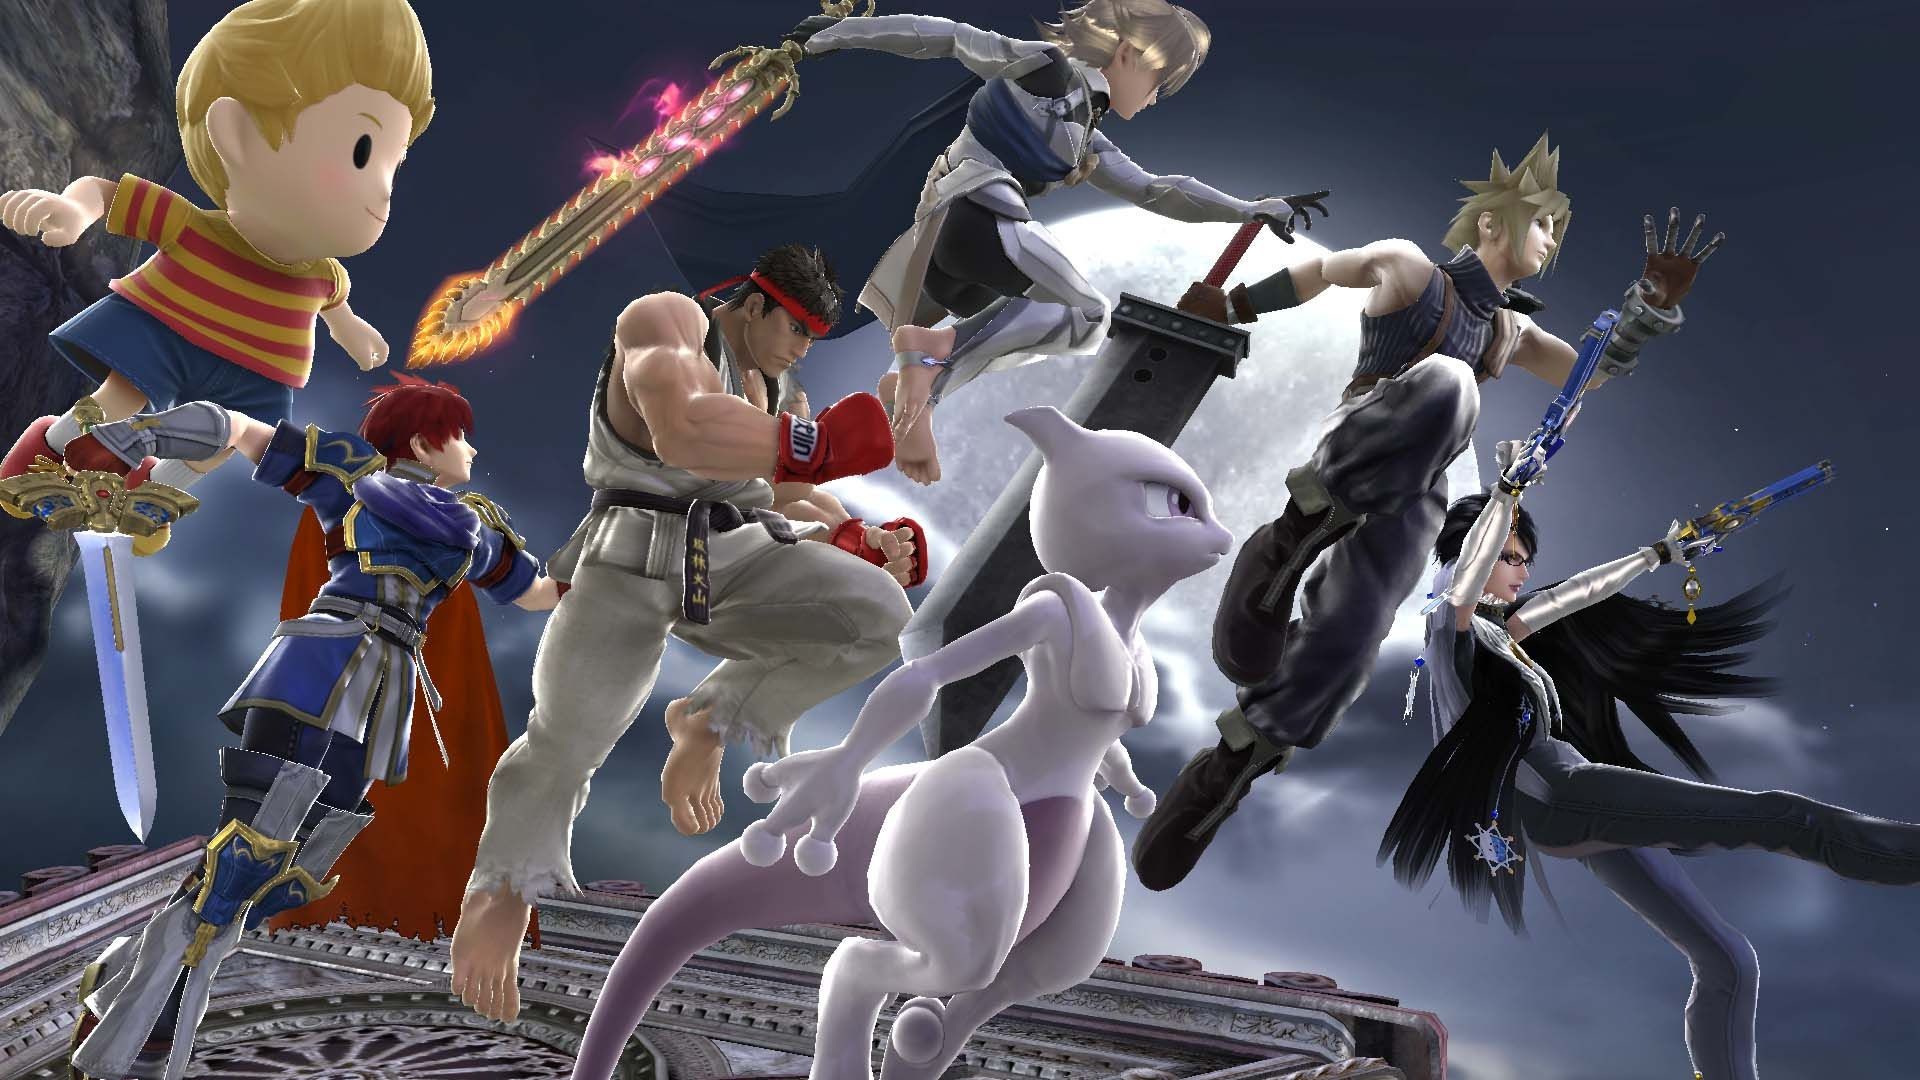 1920x1080 Lucas, Roy, Ryu, Corrin, Mewtwo, Cloud & Bayonetta Smash Bros Wii